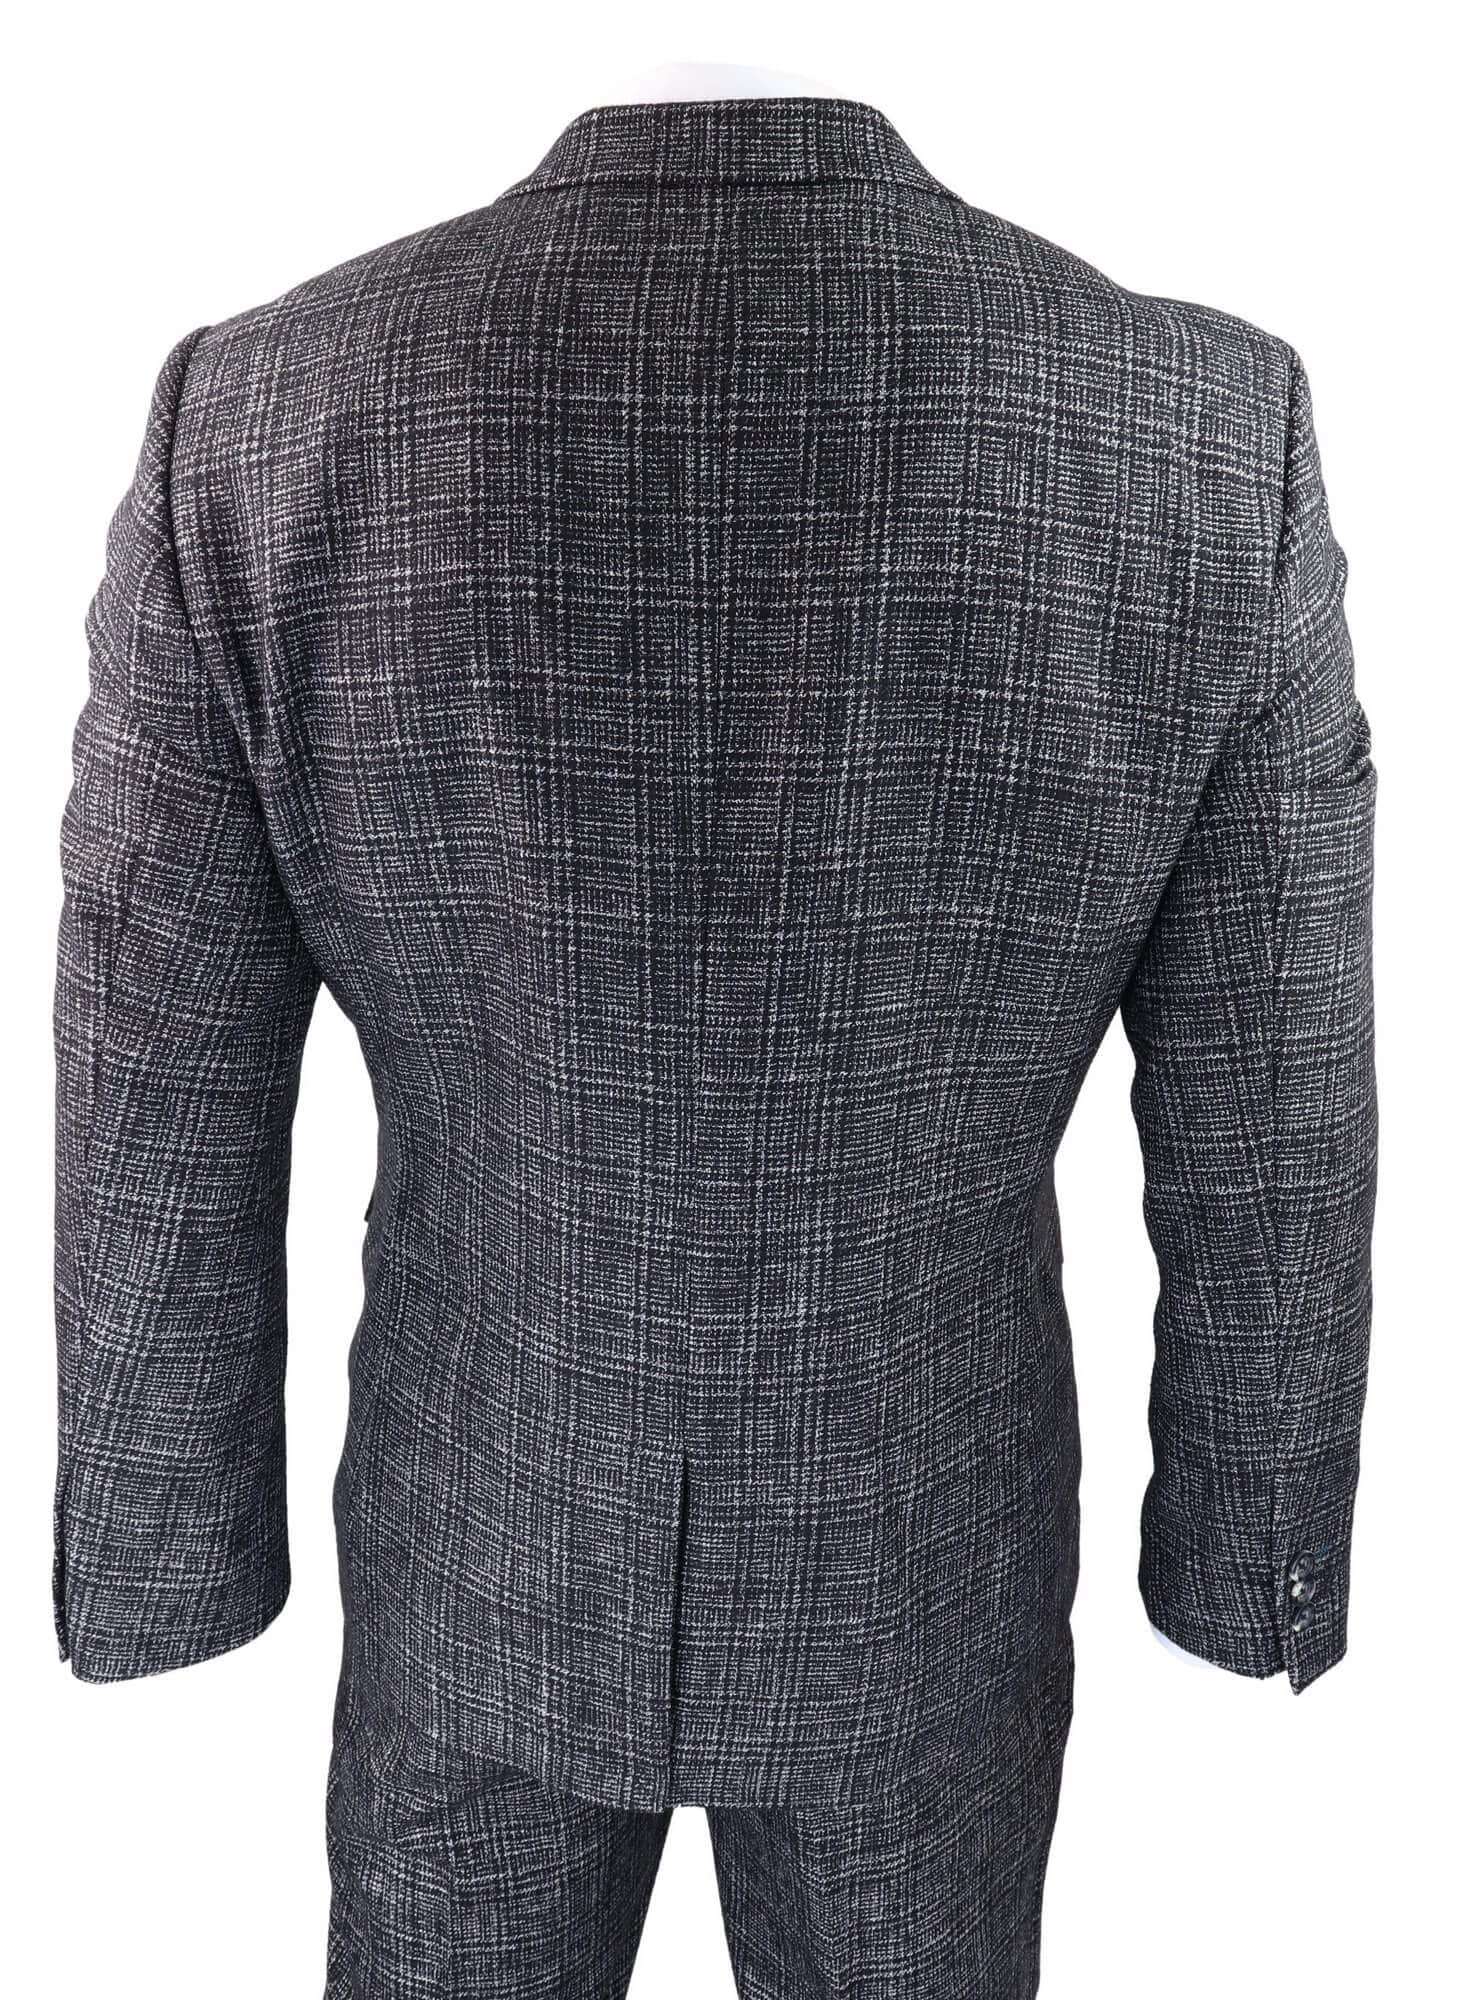 Men's Charcoal-Grey Check 3 Piece Suit: Buy Online - Happy